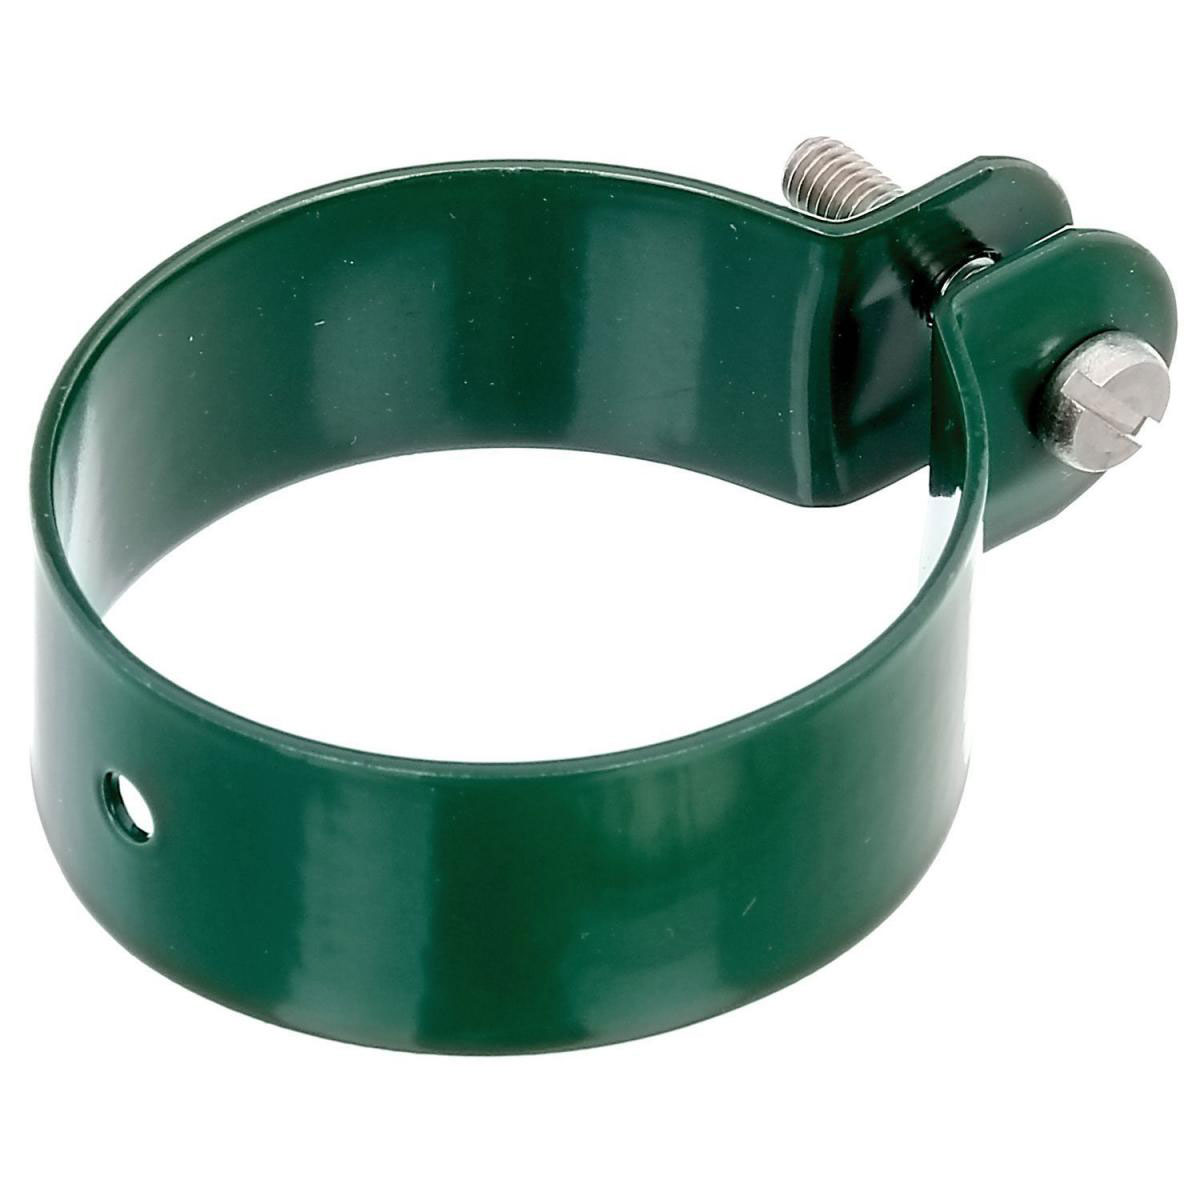 Strebenschelle, verzinkt-grün, für 60 mm Durchmesser